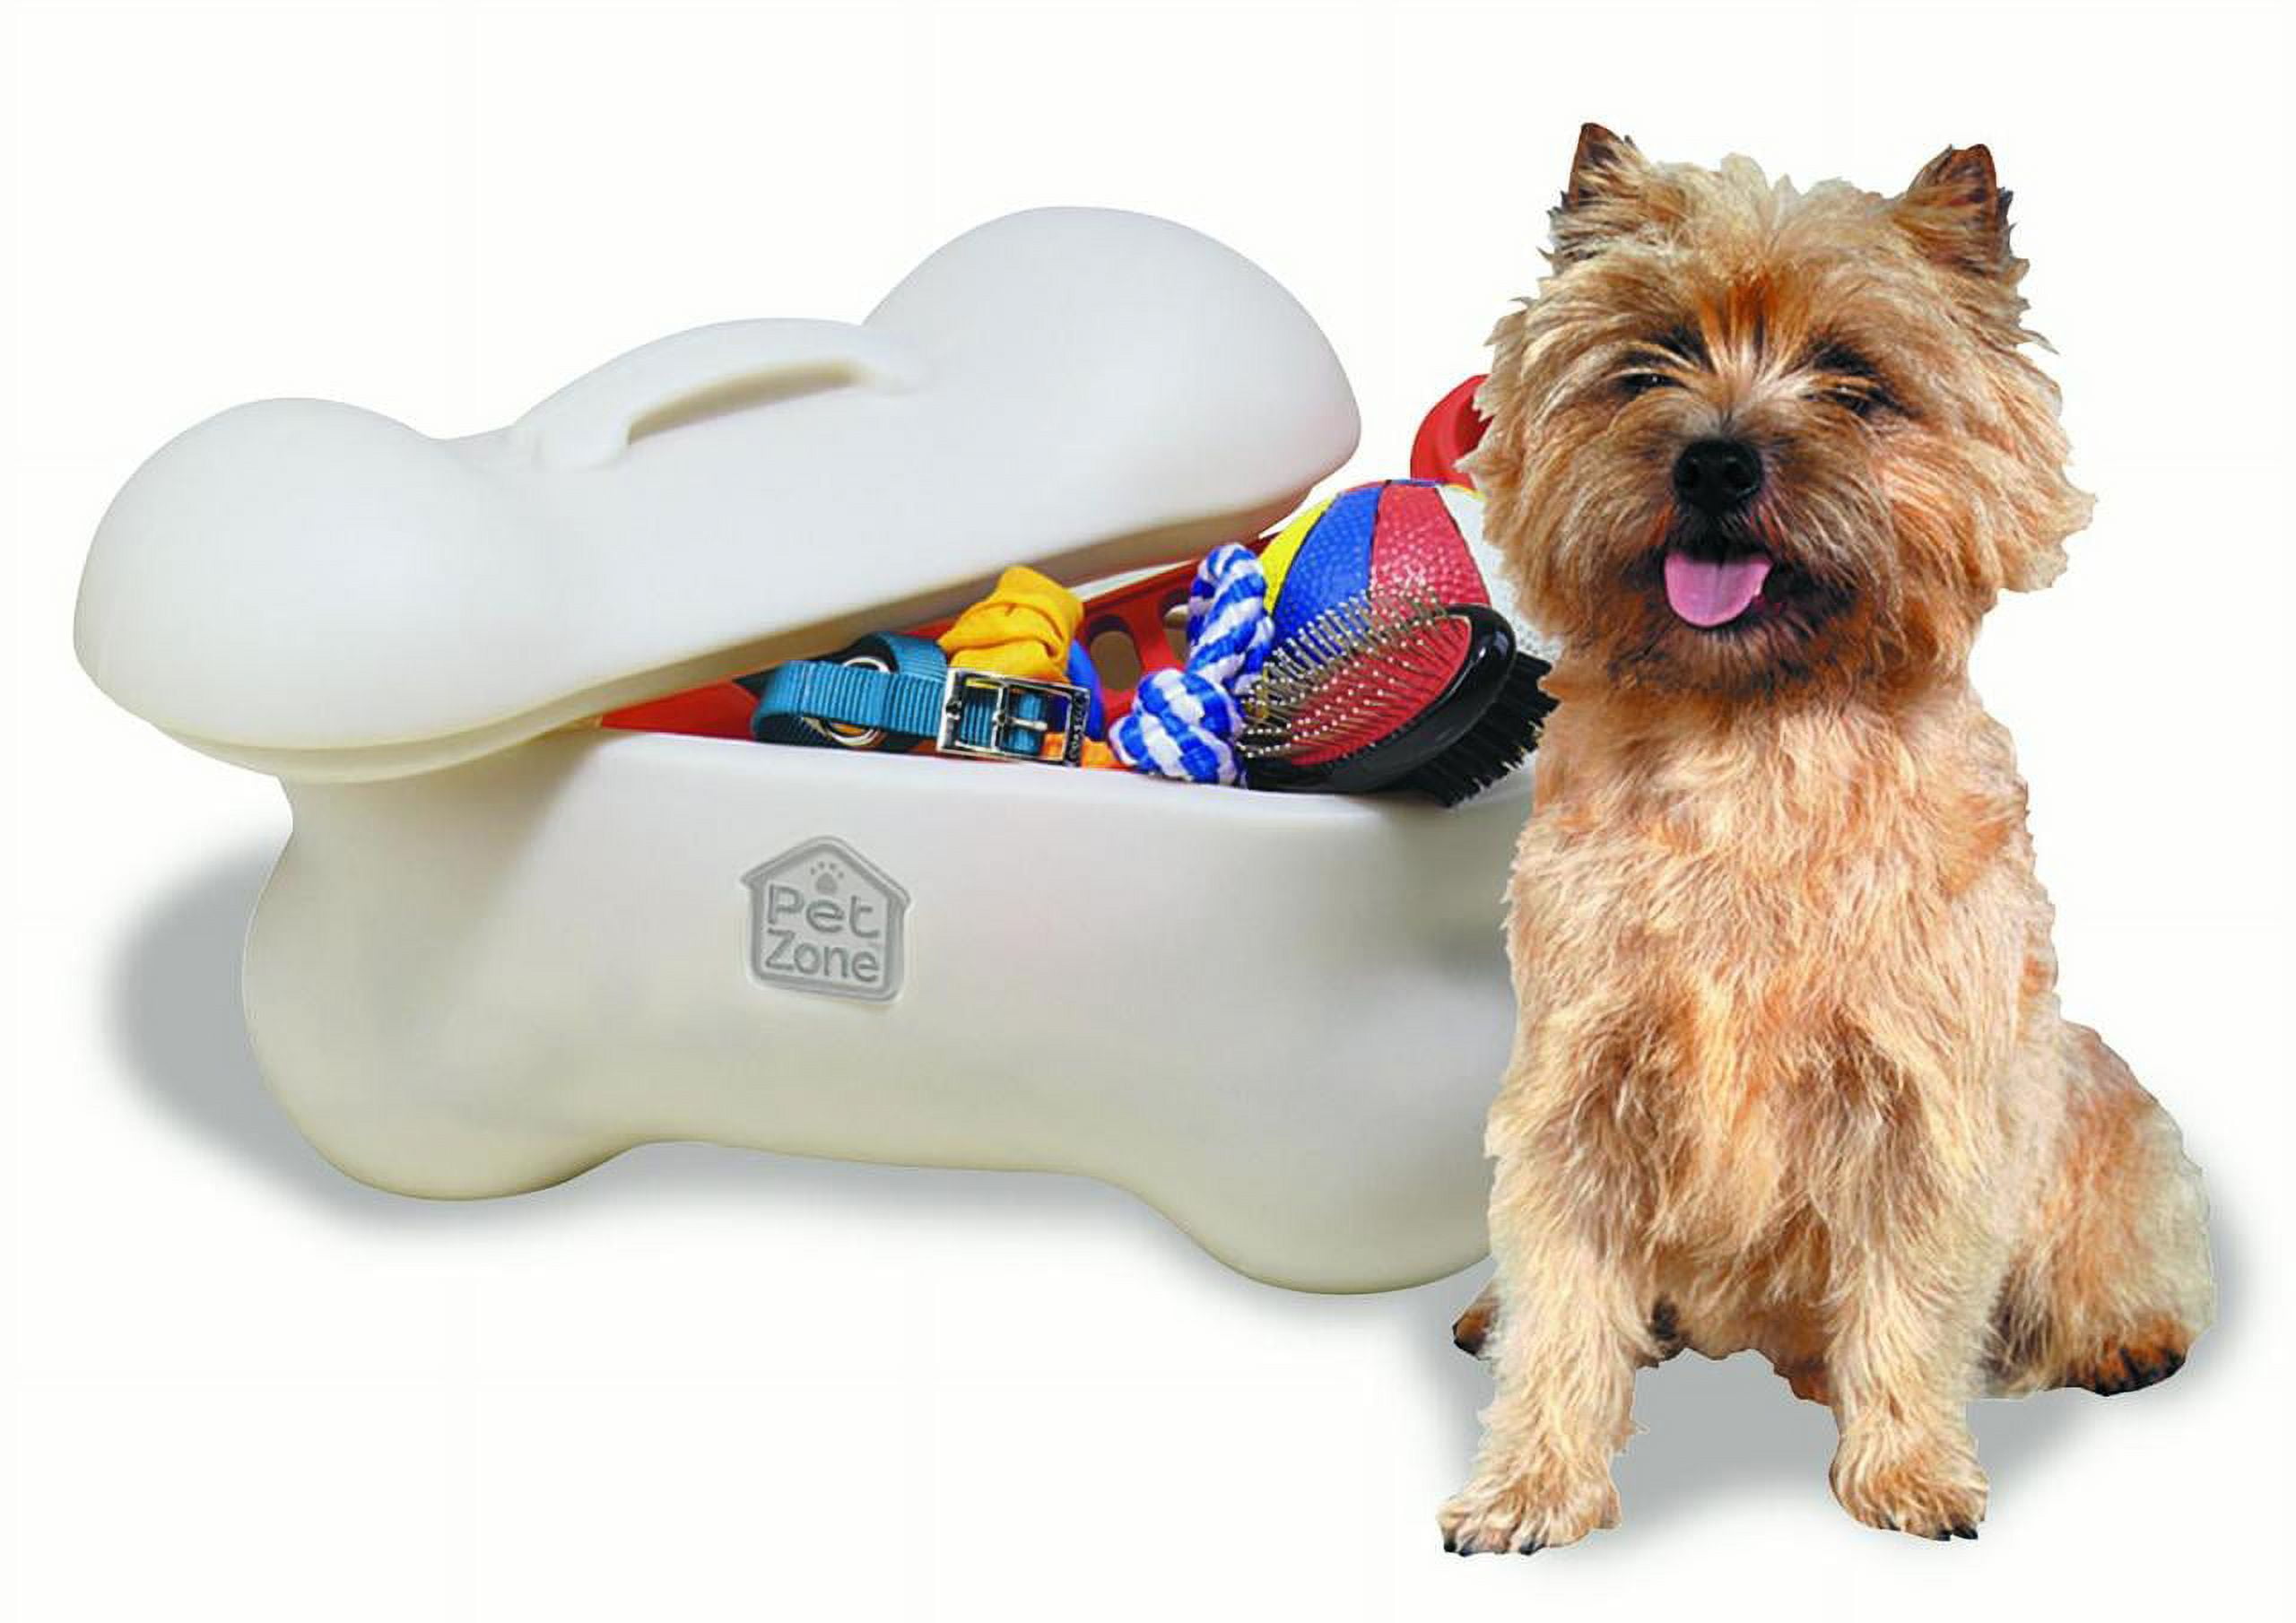 Dog Toy Box Personalized Dog Toy Storage, Dog Paw, Pet Furniture